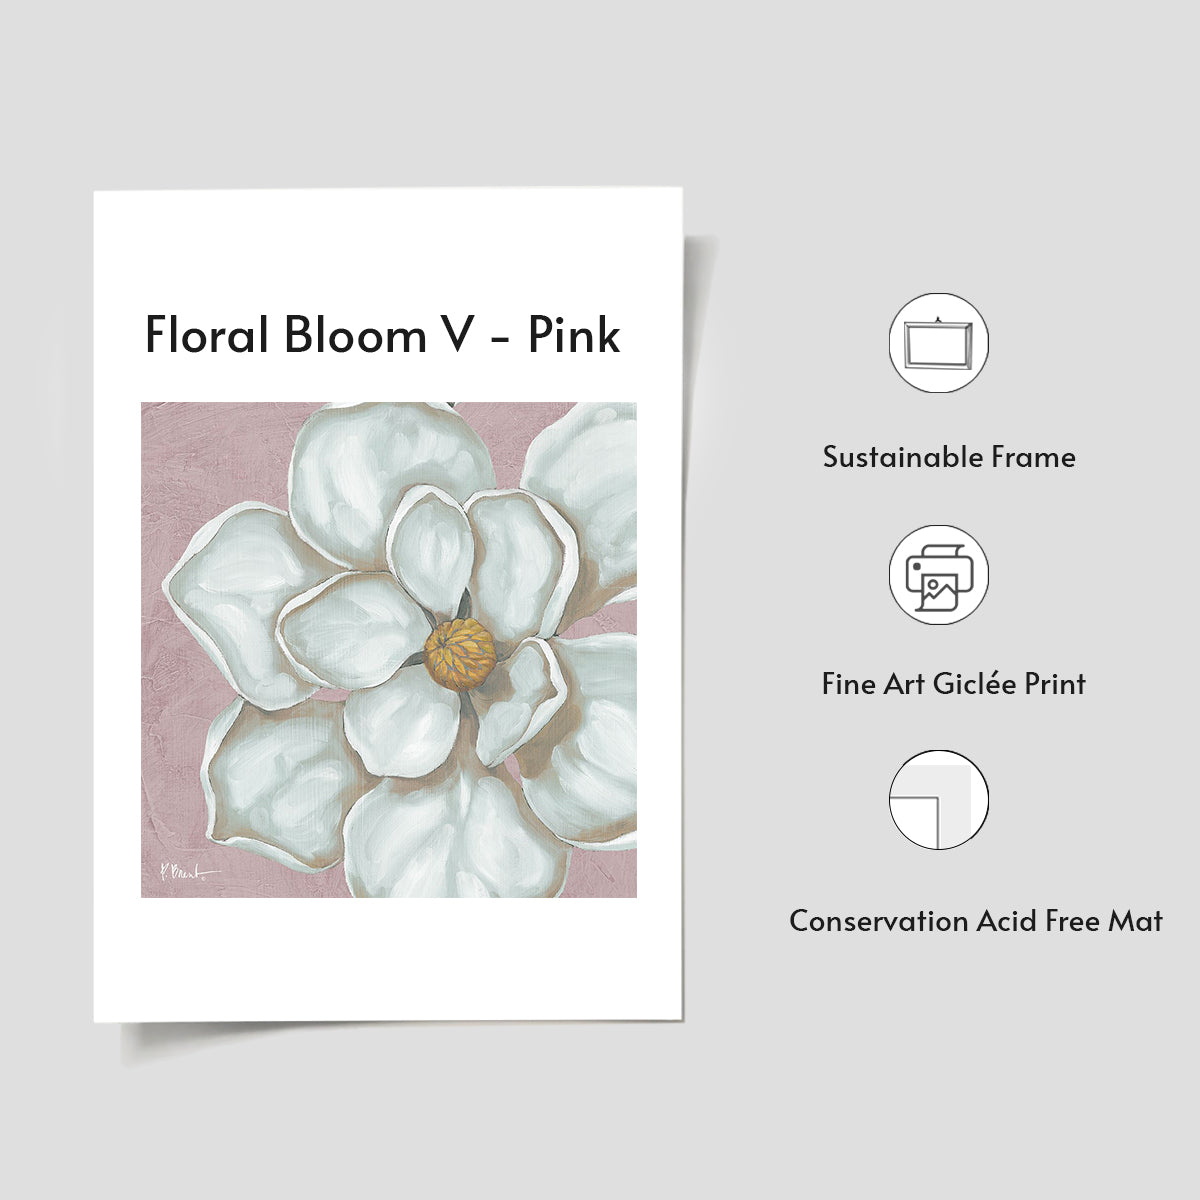 Floral Bloom V - Pink